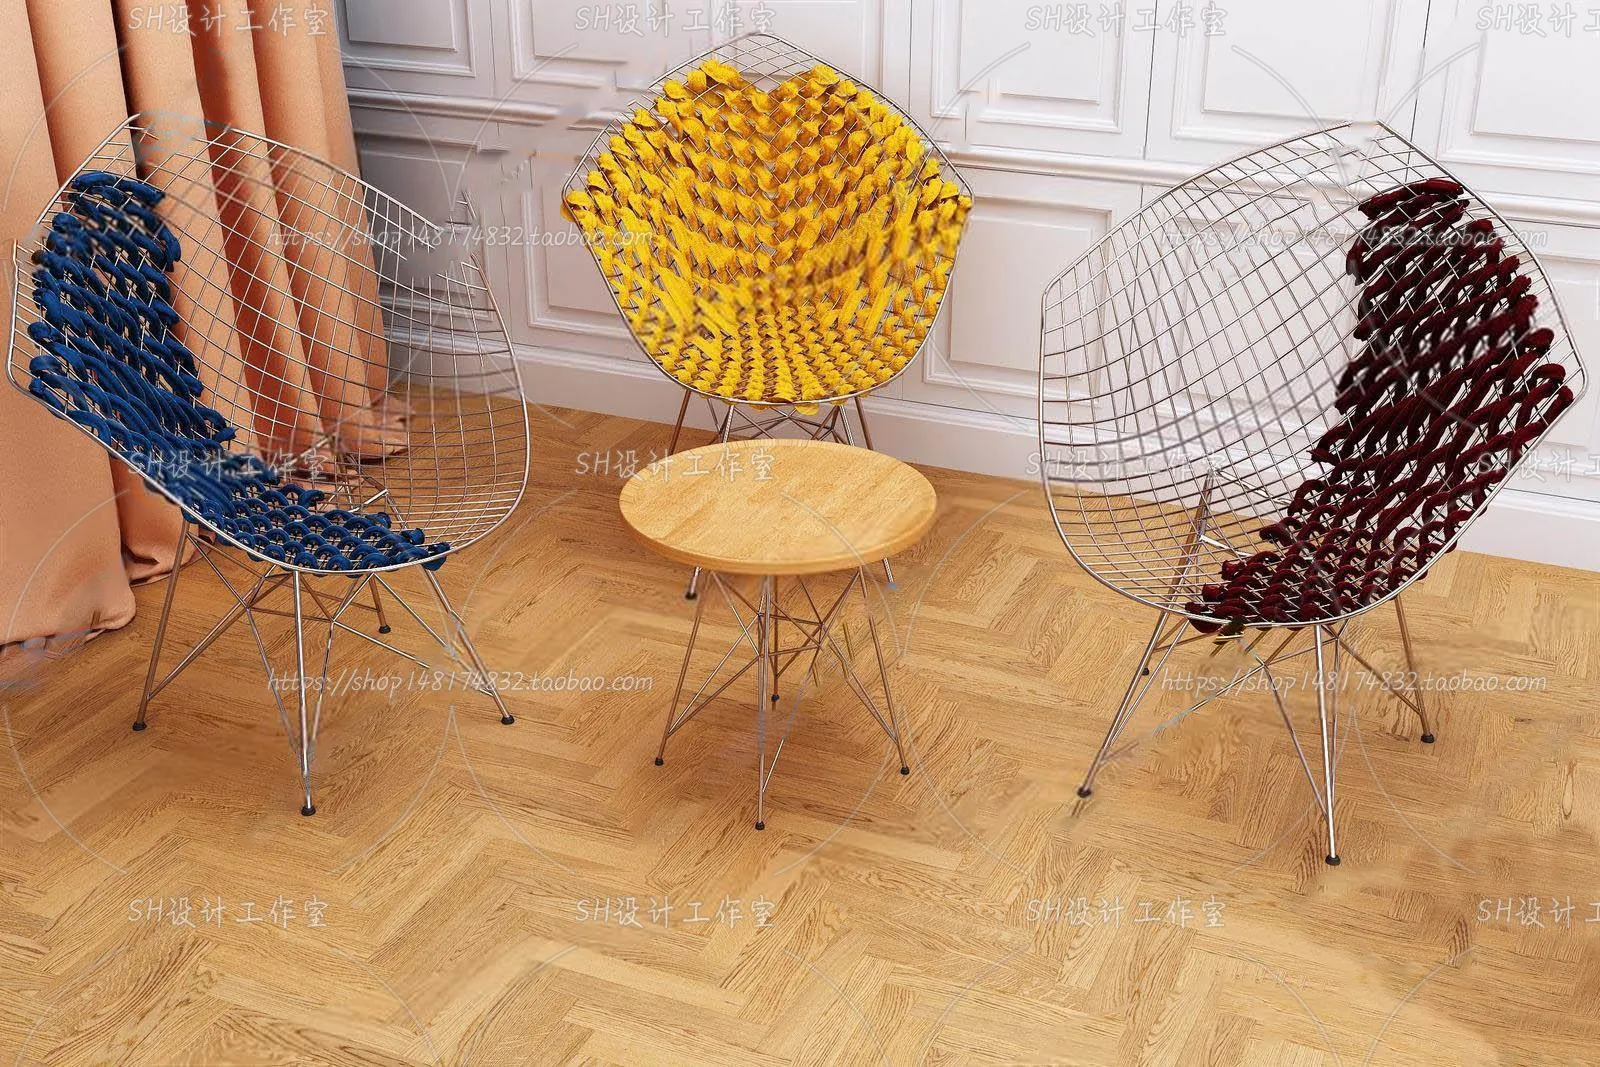 Chair – Single Chair 3D Models – 2009